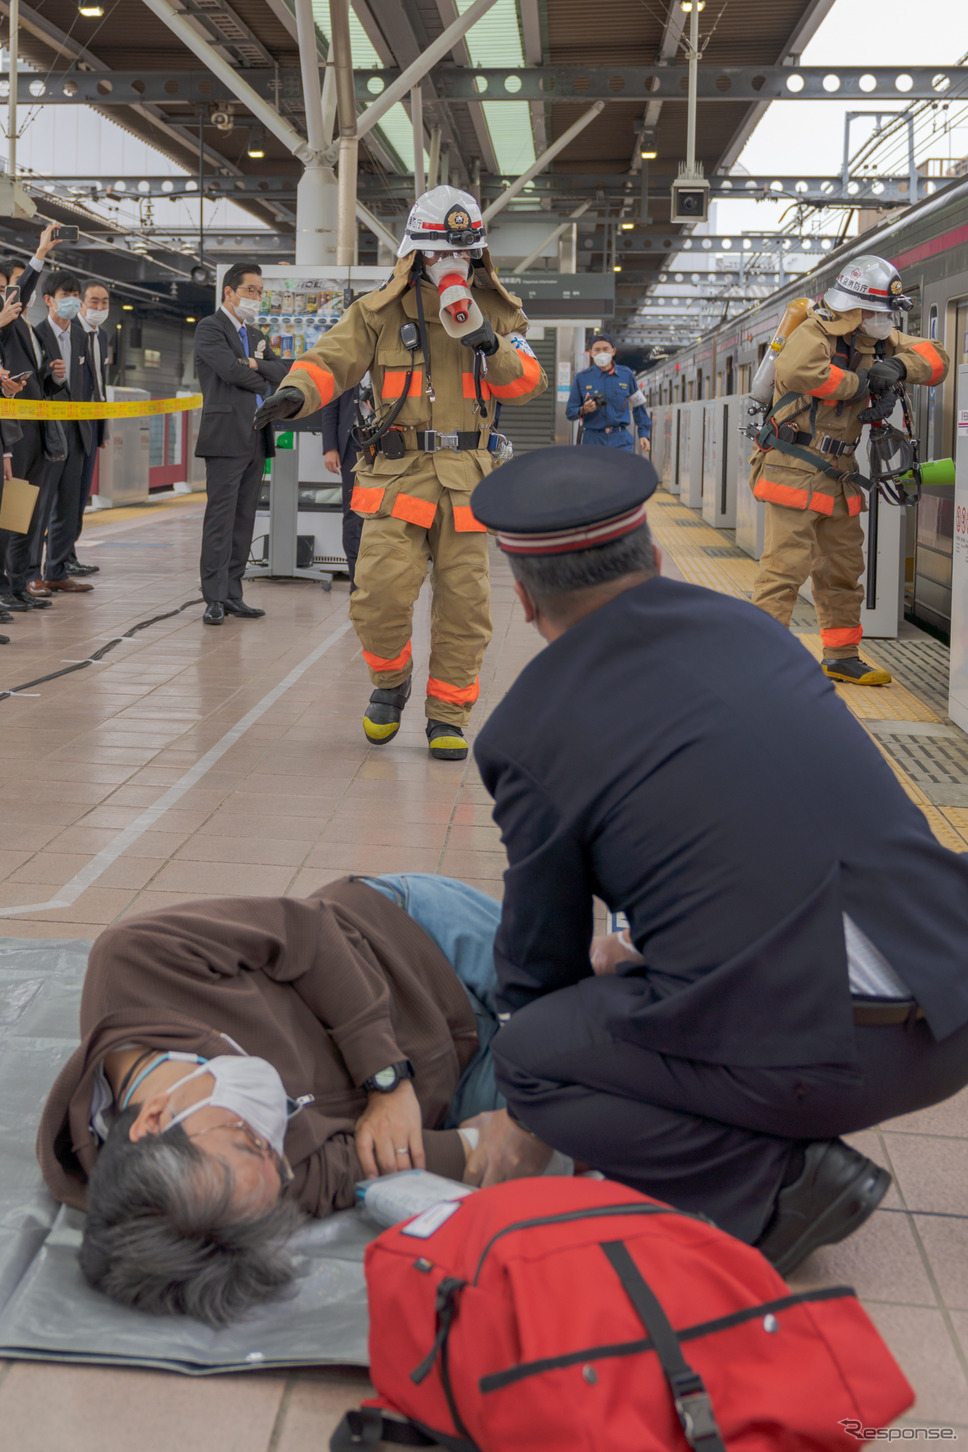 消防隊と救急隊が到着し、駅係員は事件現場や負傷者について知らせる。《写真撮影 関口敬文》